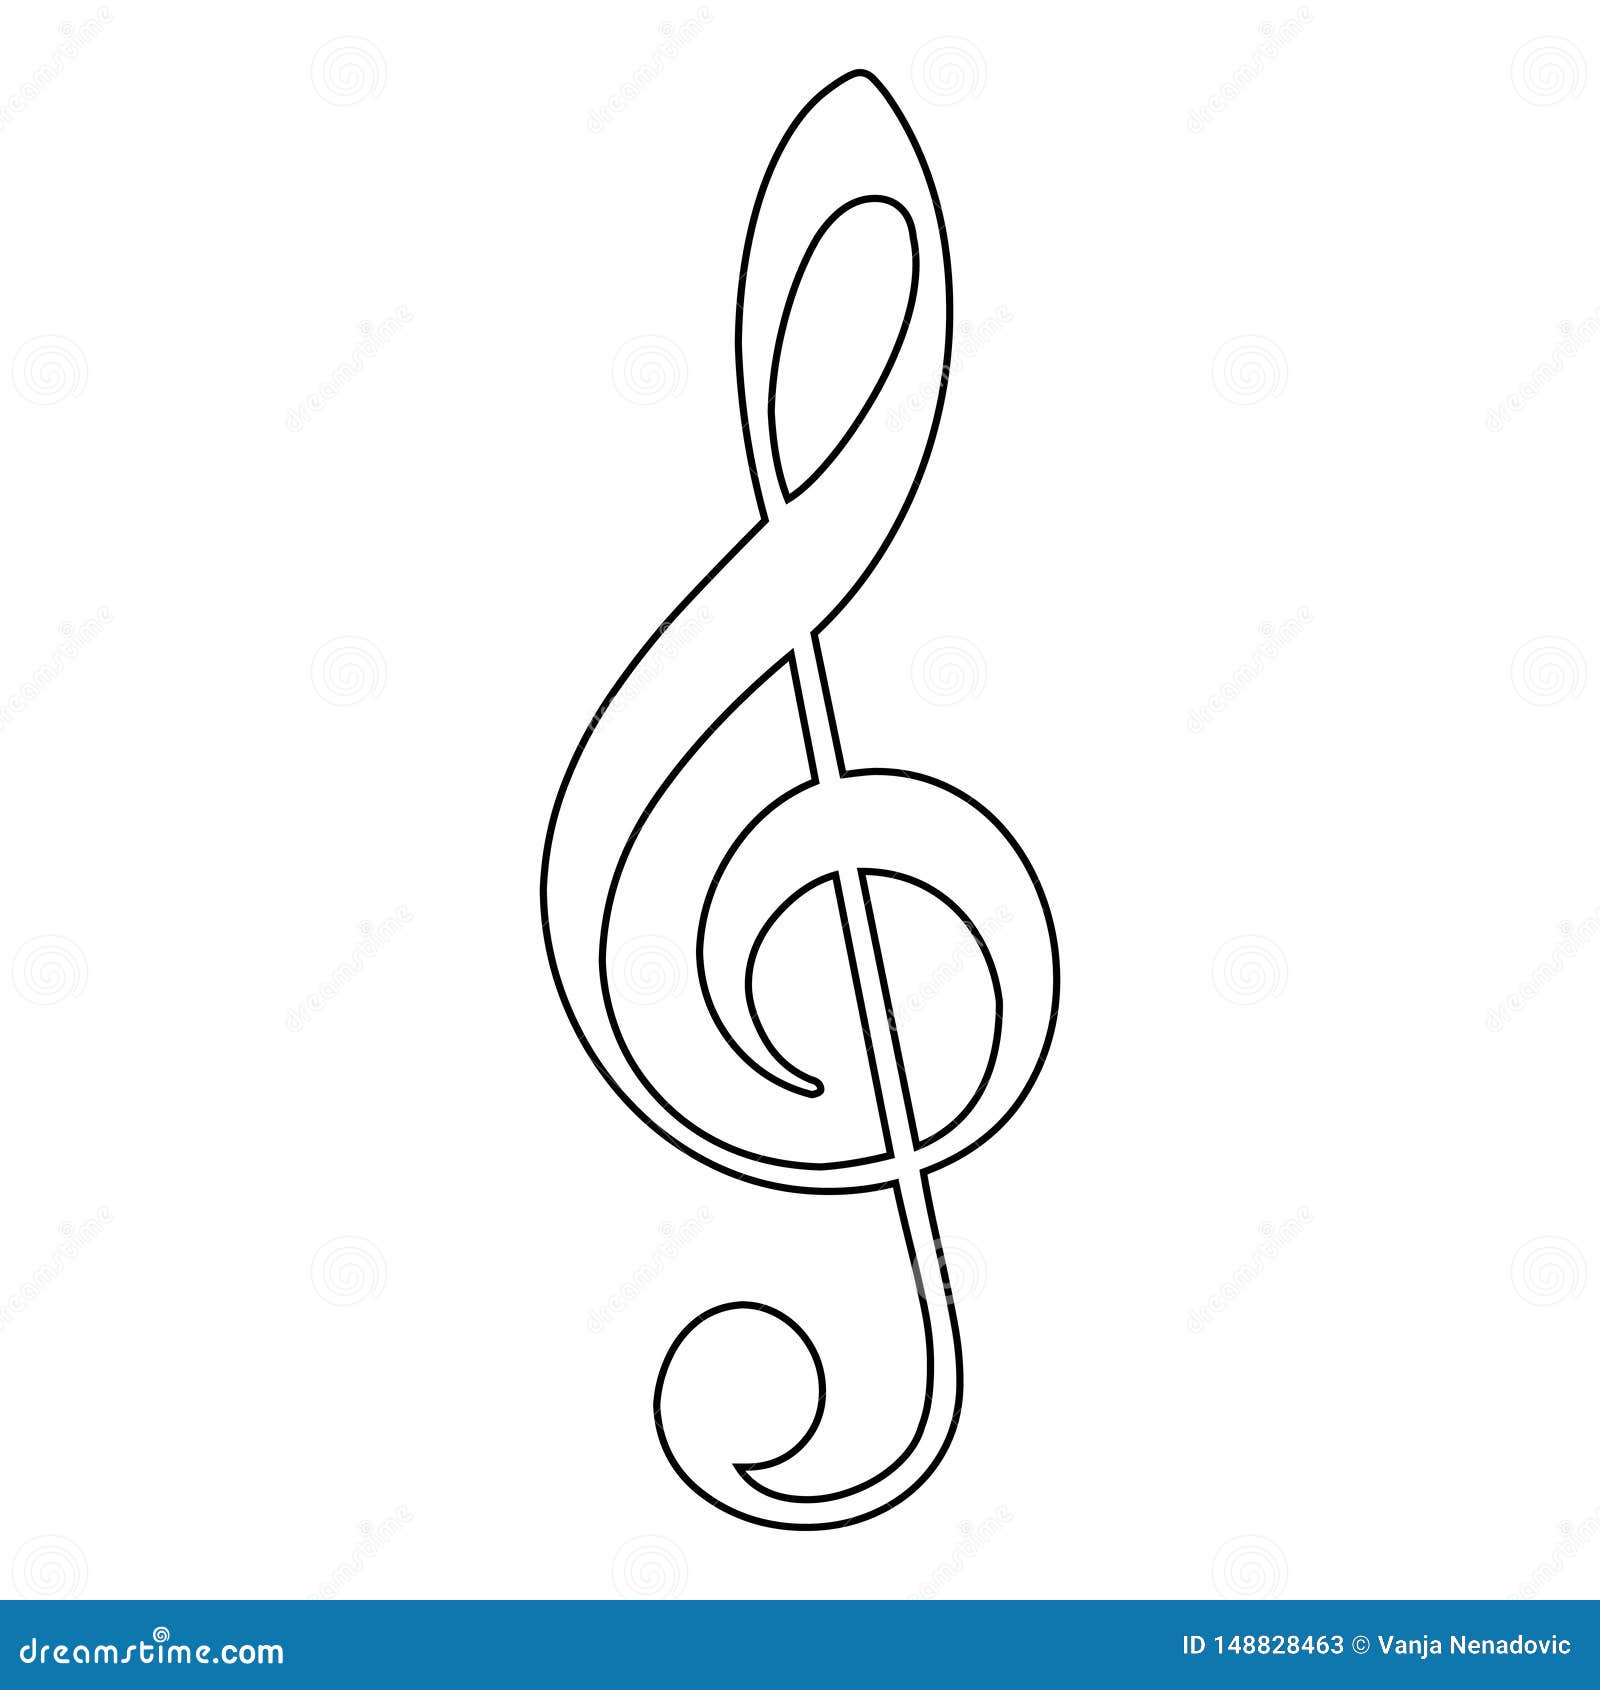 treble clef icon, music note,  